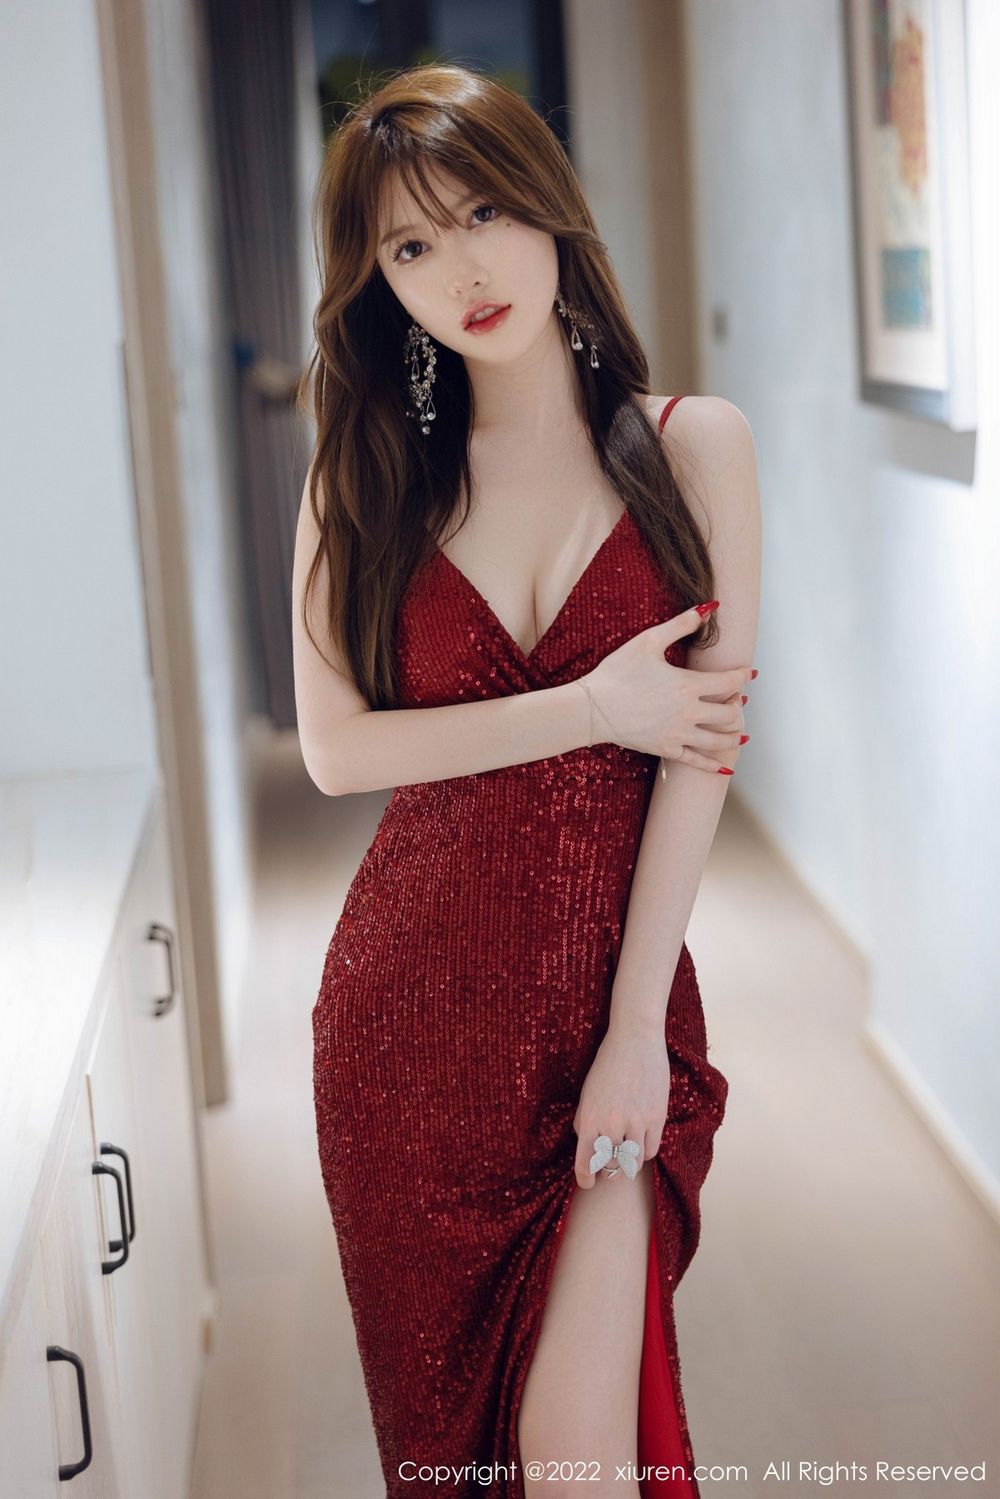 美女模特美桃酱红色长裙搭配原色丝袜系列性感写真